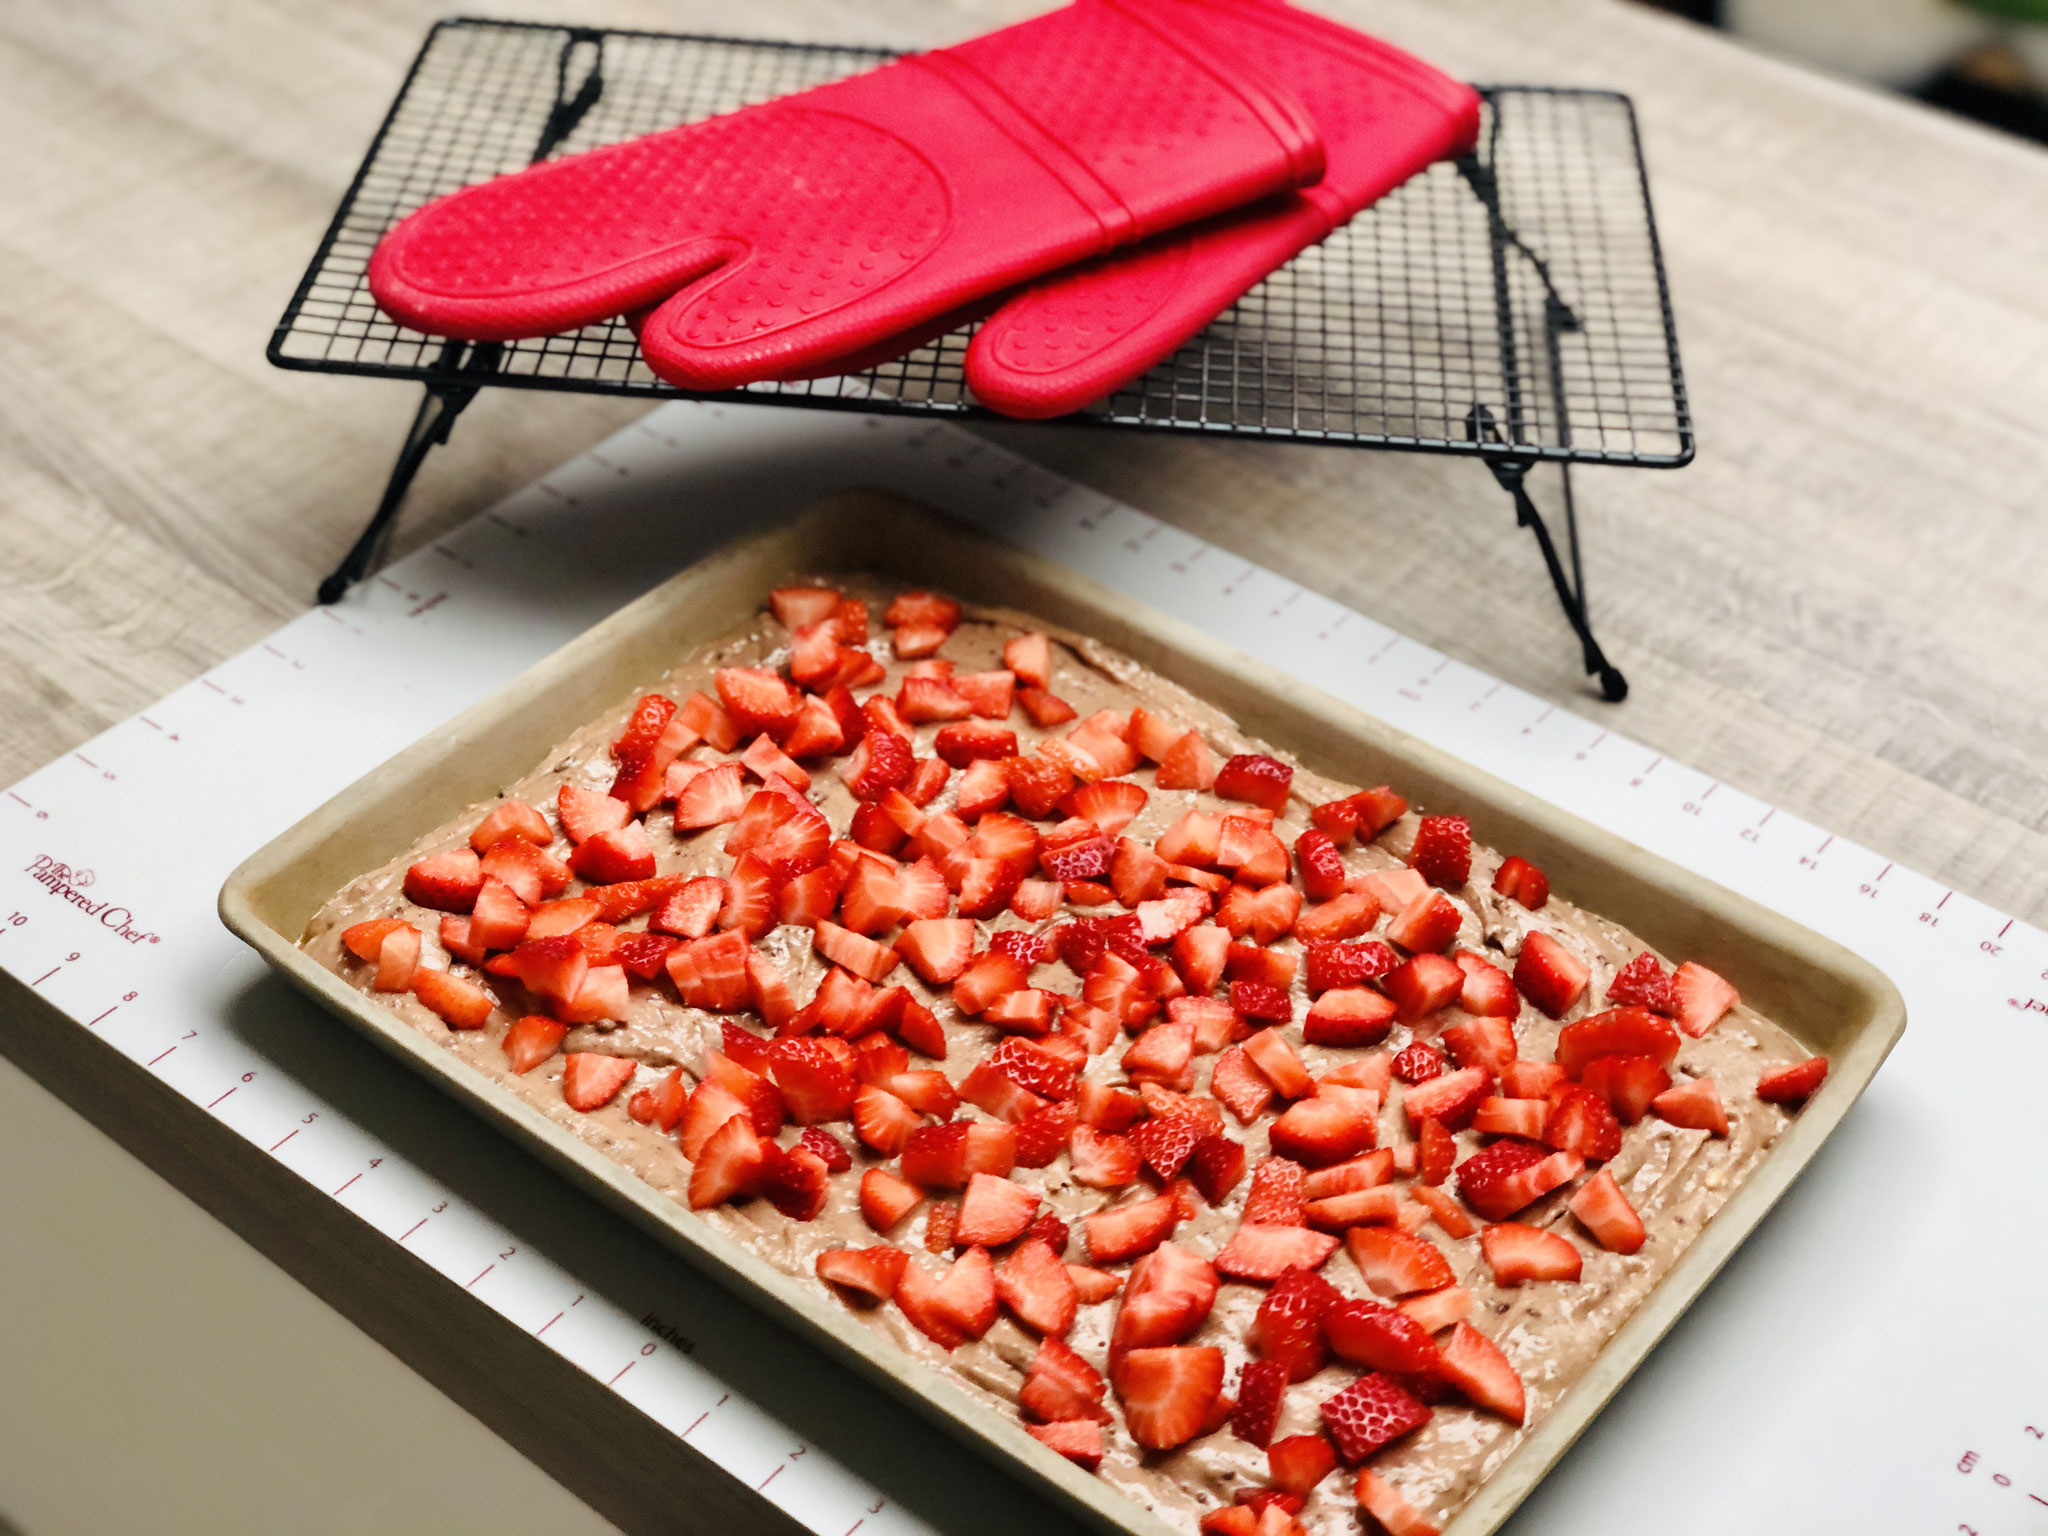 Den Teig in den Ofenzauberer fließen lassen und glatt streichen und darauf die geschnittenen Erdbeeren verteilen...